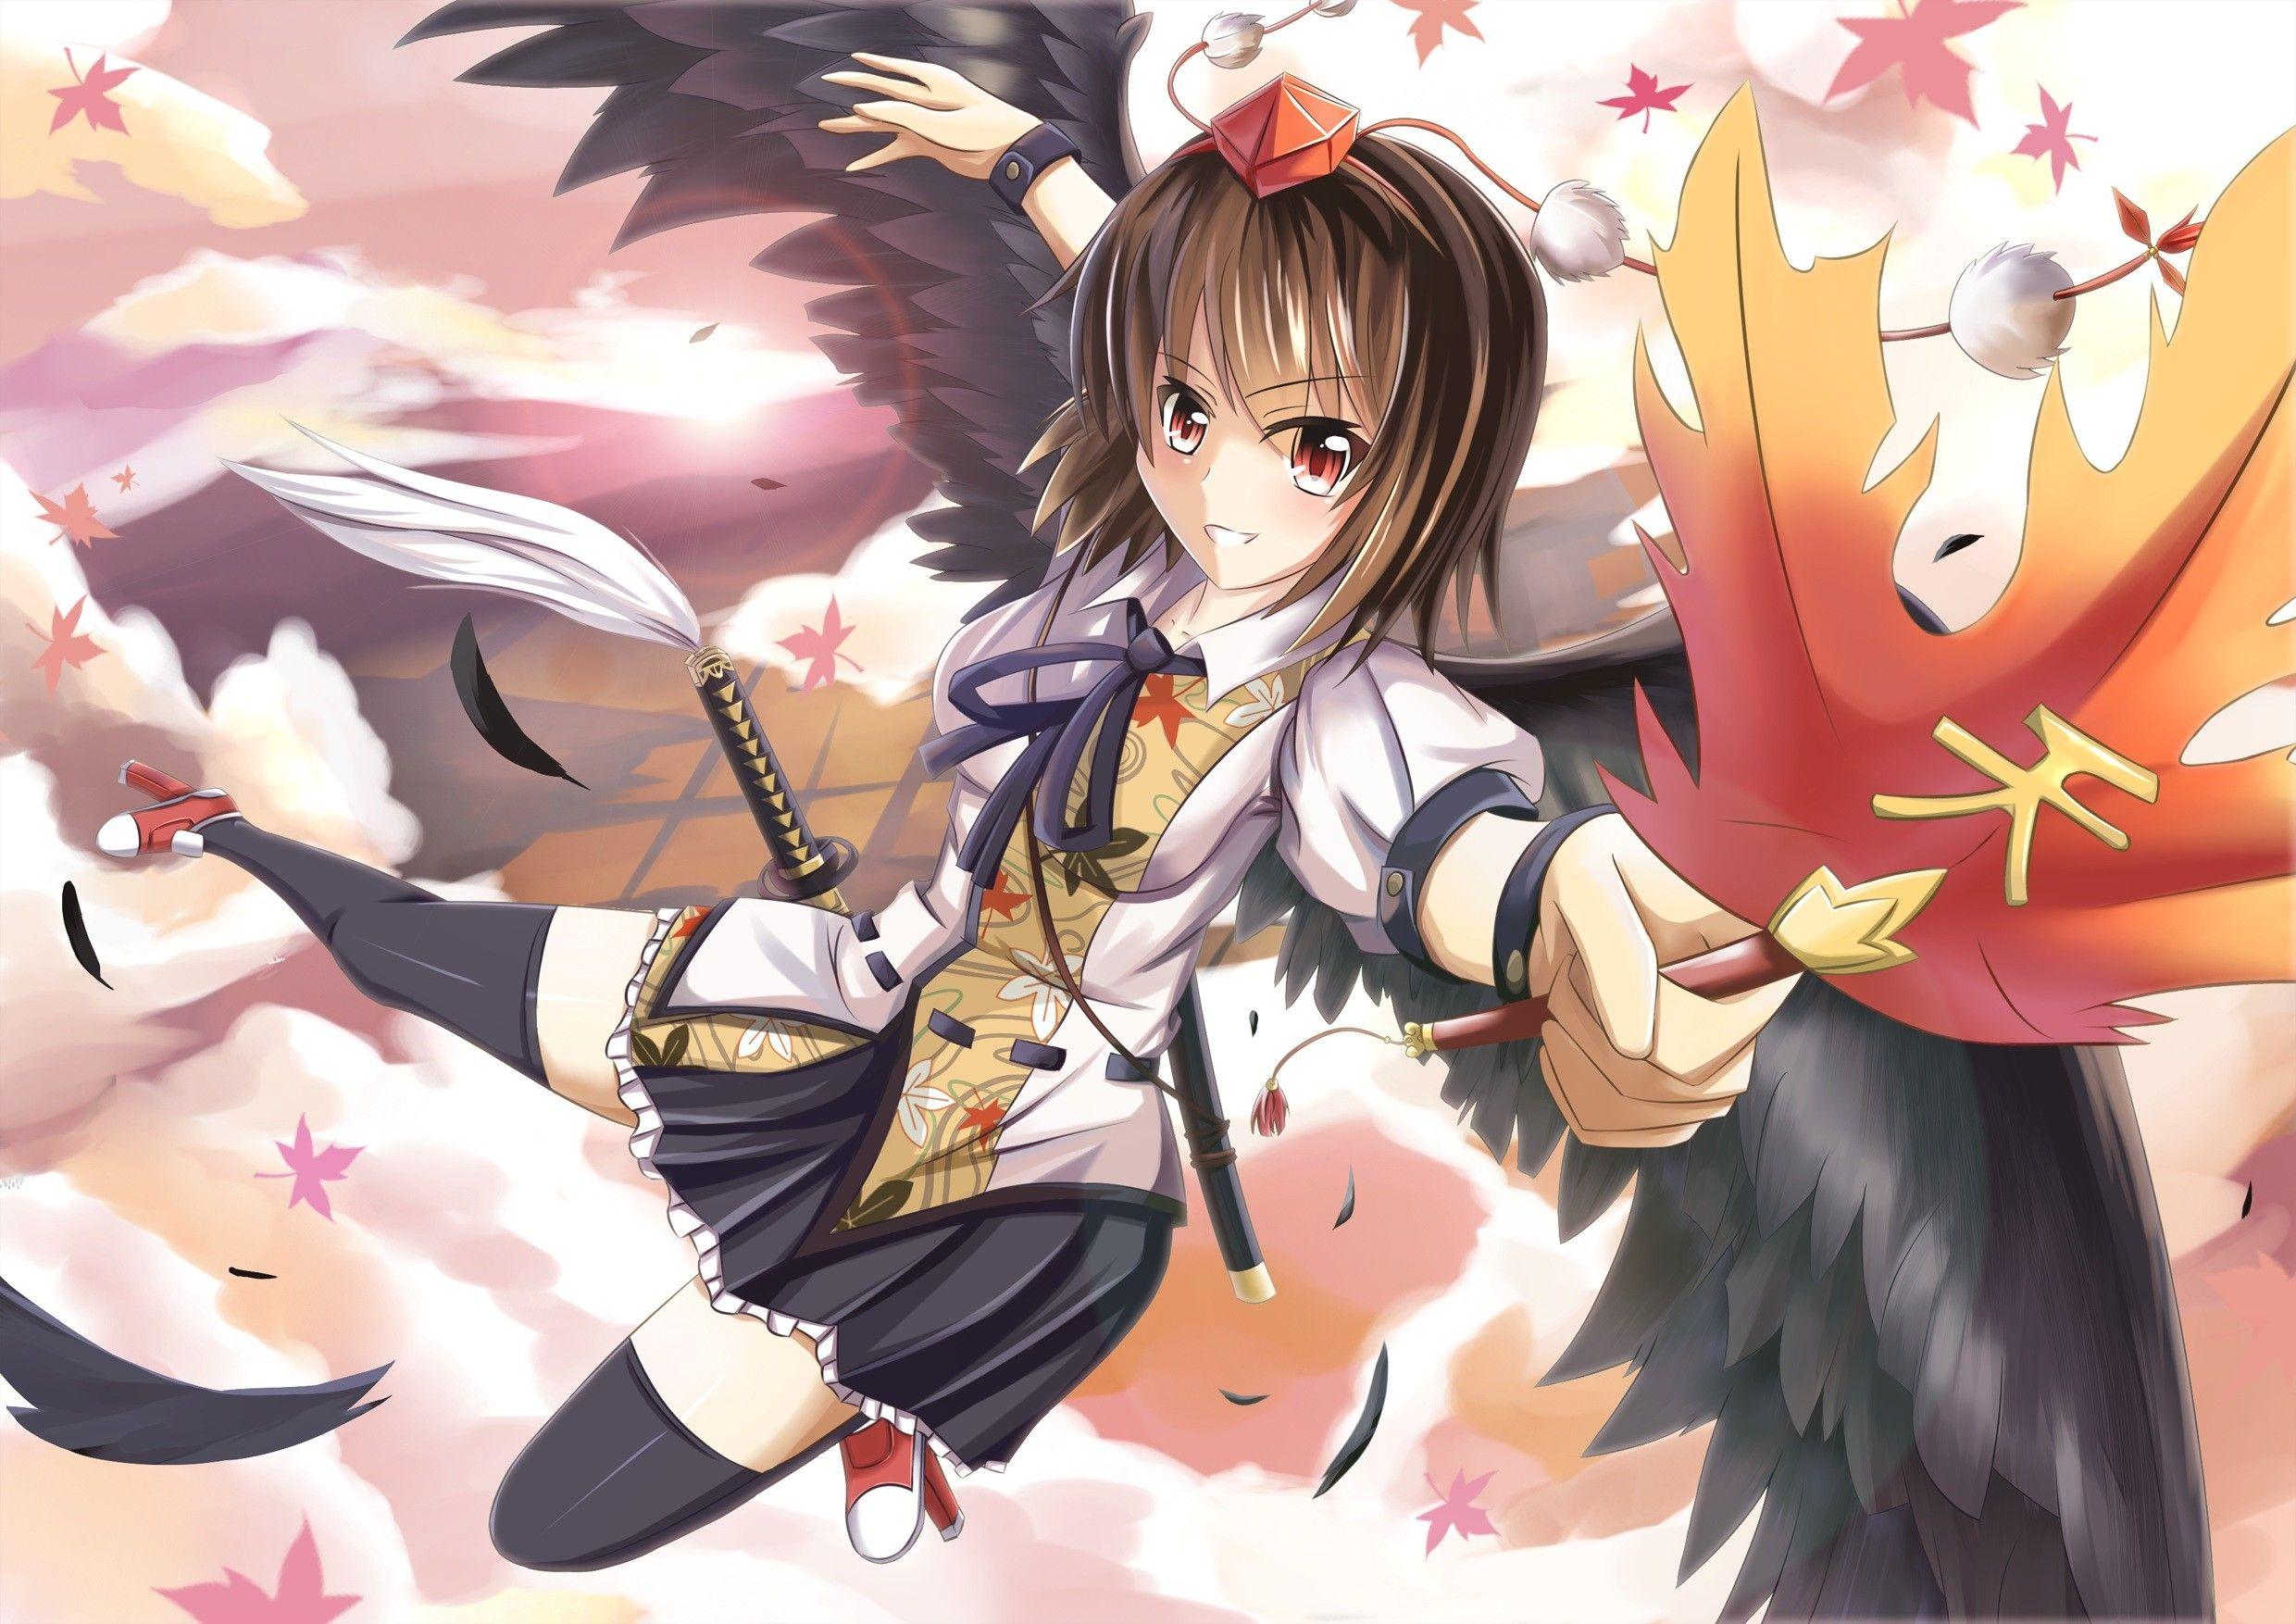 Touhou, wings, Shameimaru Aya, anime girls